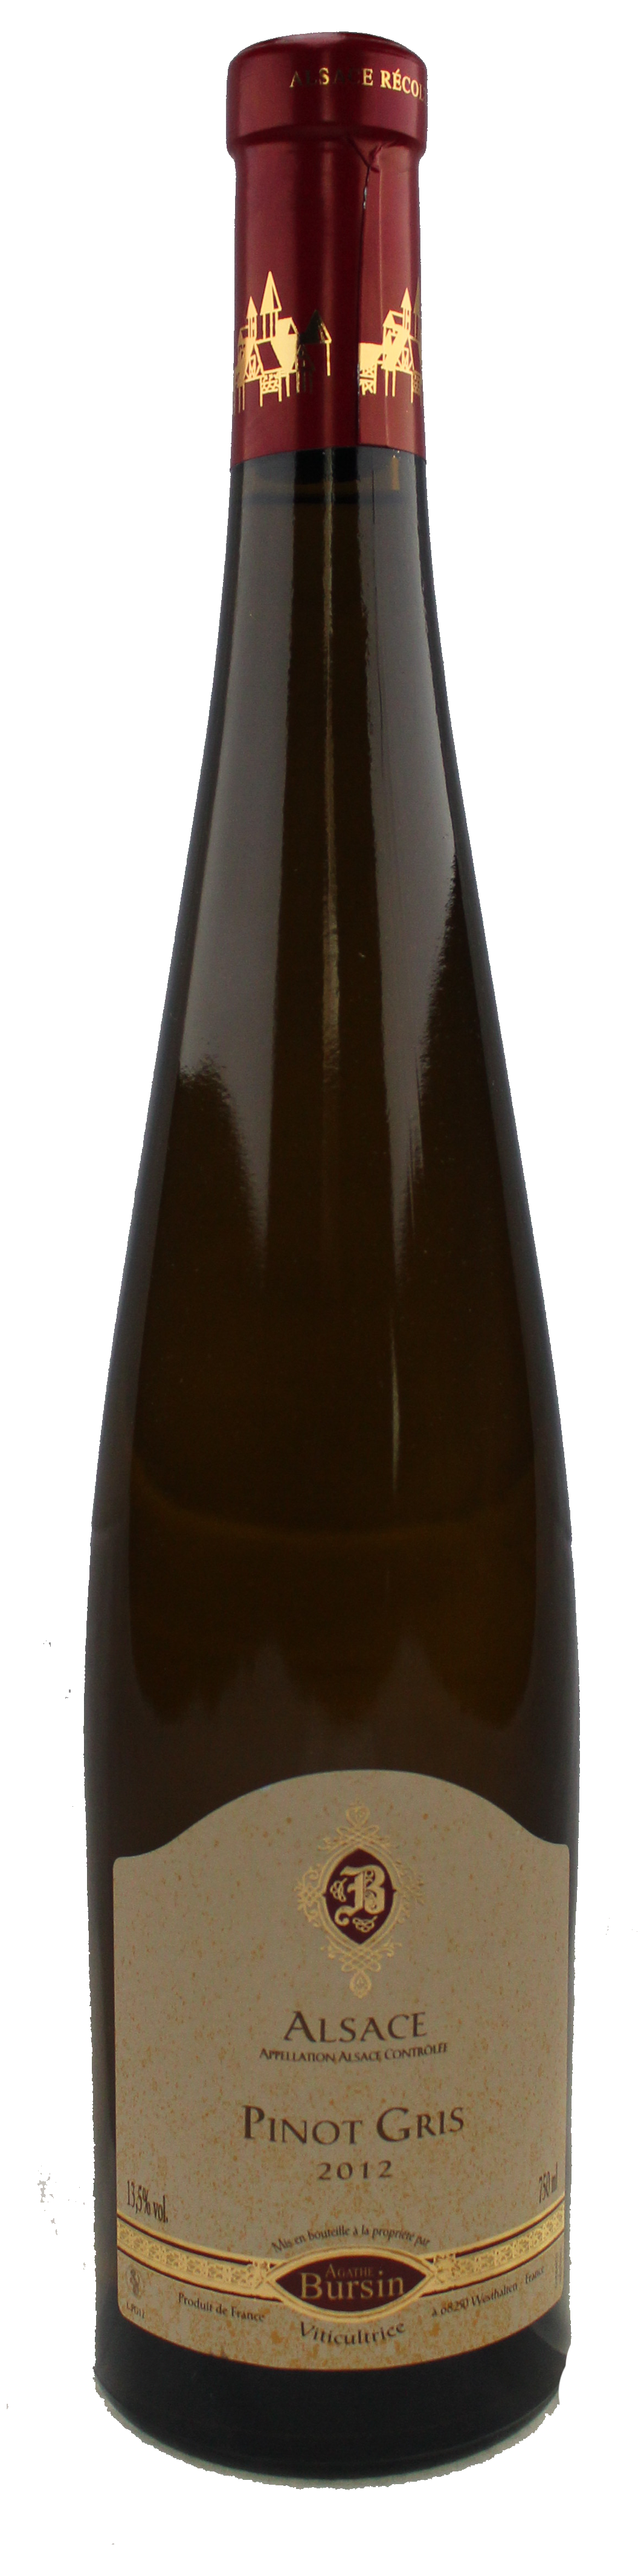 Bottle shot of 2014 Pinot Gris Dirstelberg